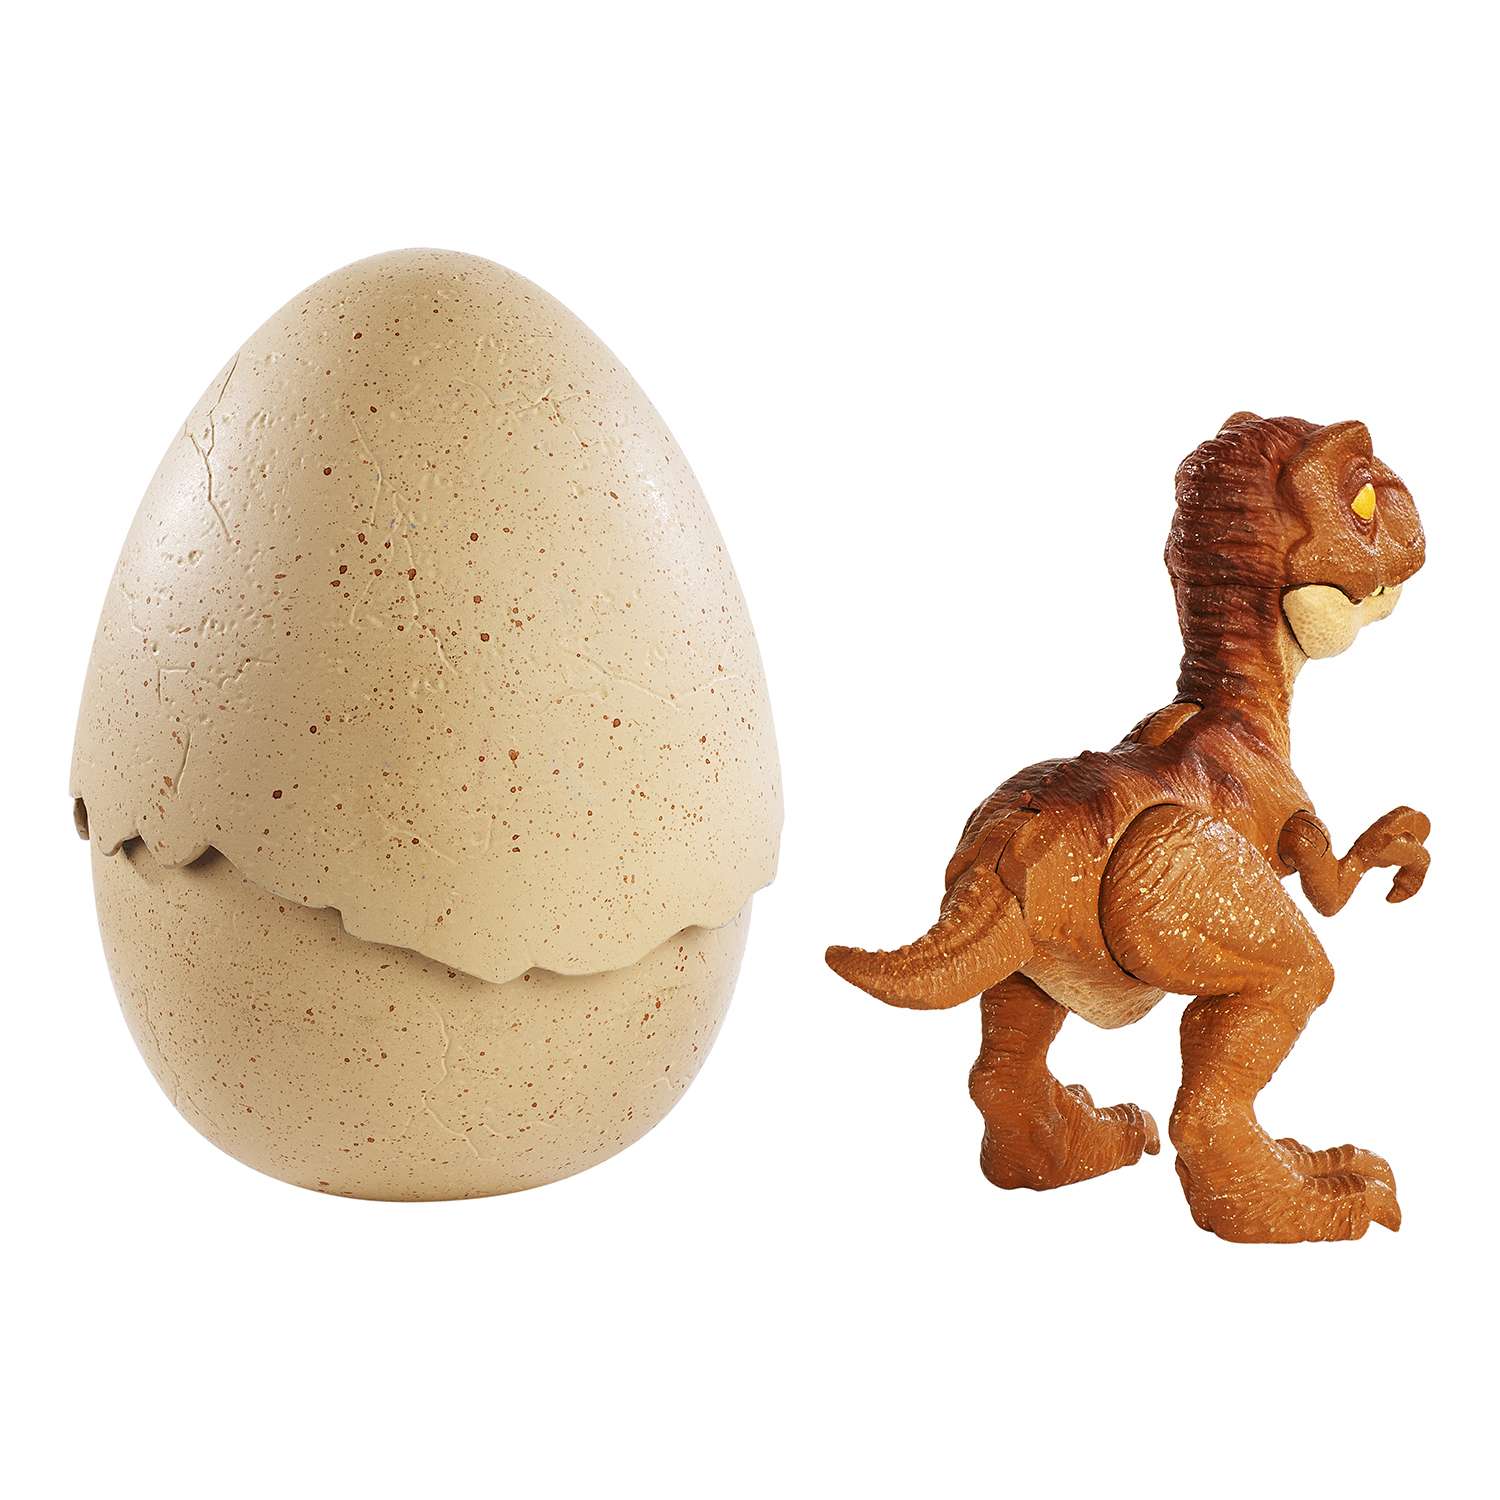 Яйца динозавров купить. Jurassic World динозавр в яйце. Фигурка Jurassic World яйцо. Яйцо динозавра игрушка Jurassic World. Набор археологический Jurassic World динозавр в яйце.